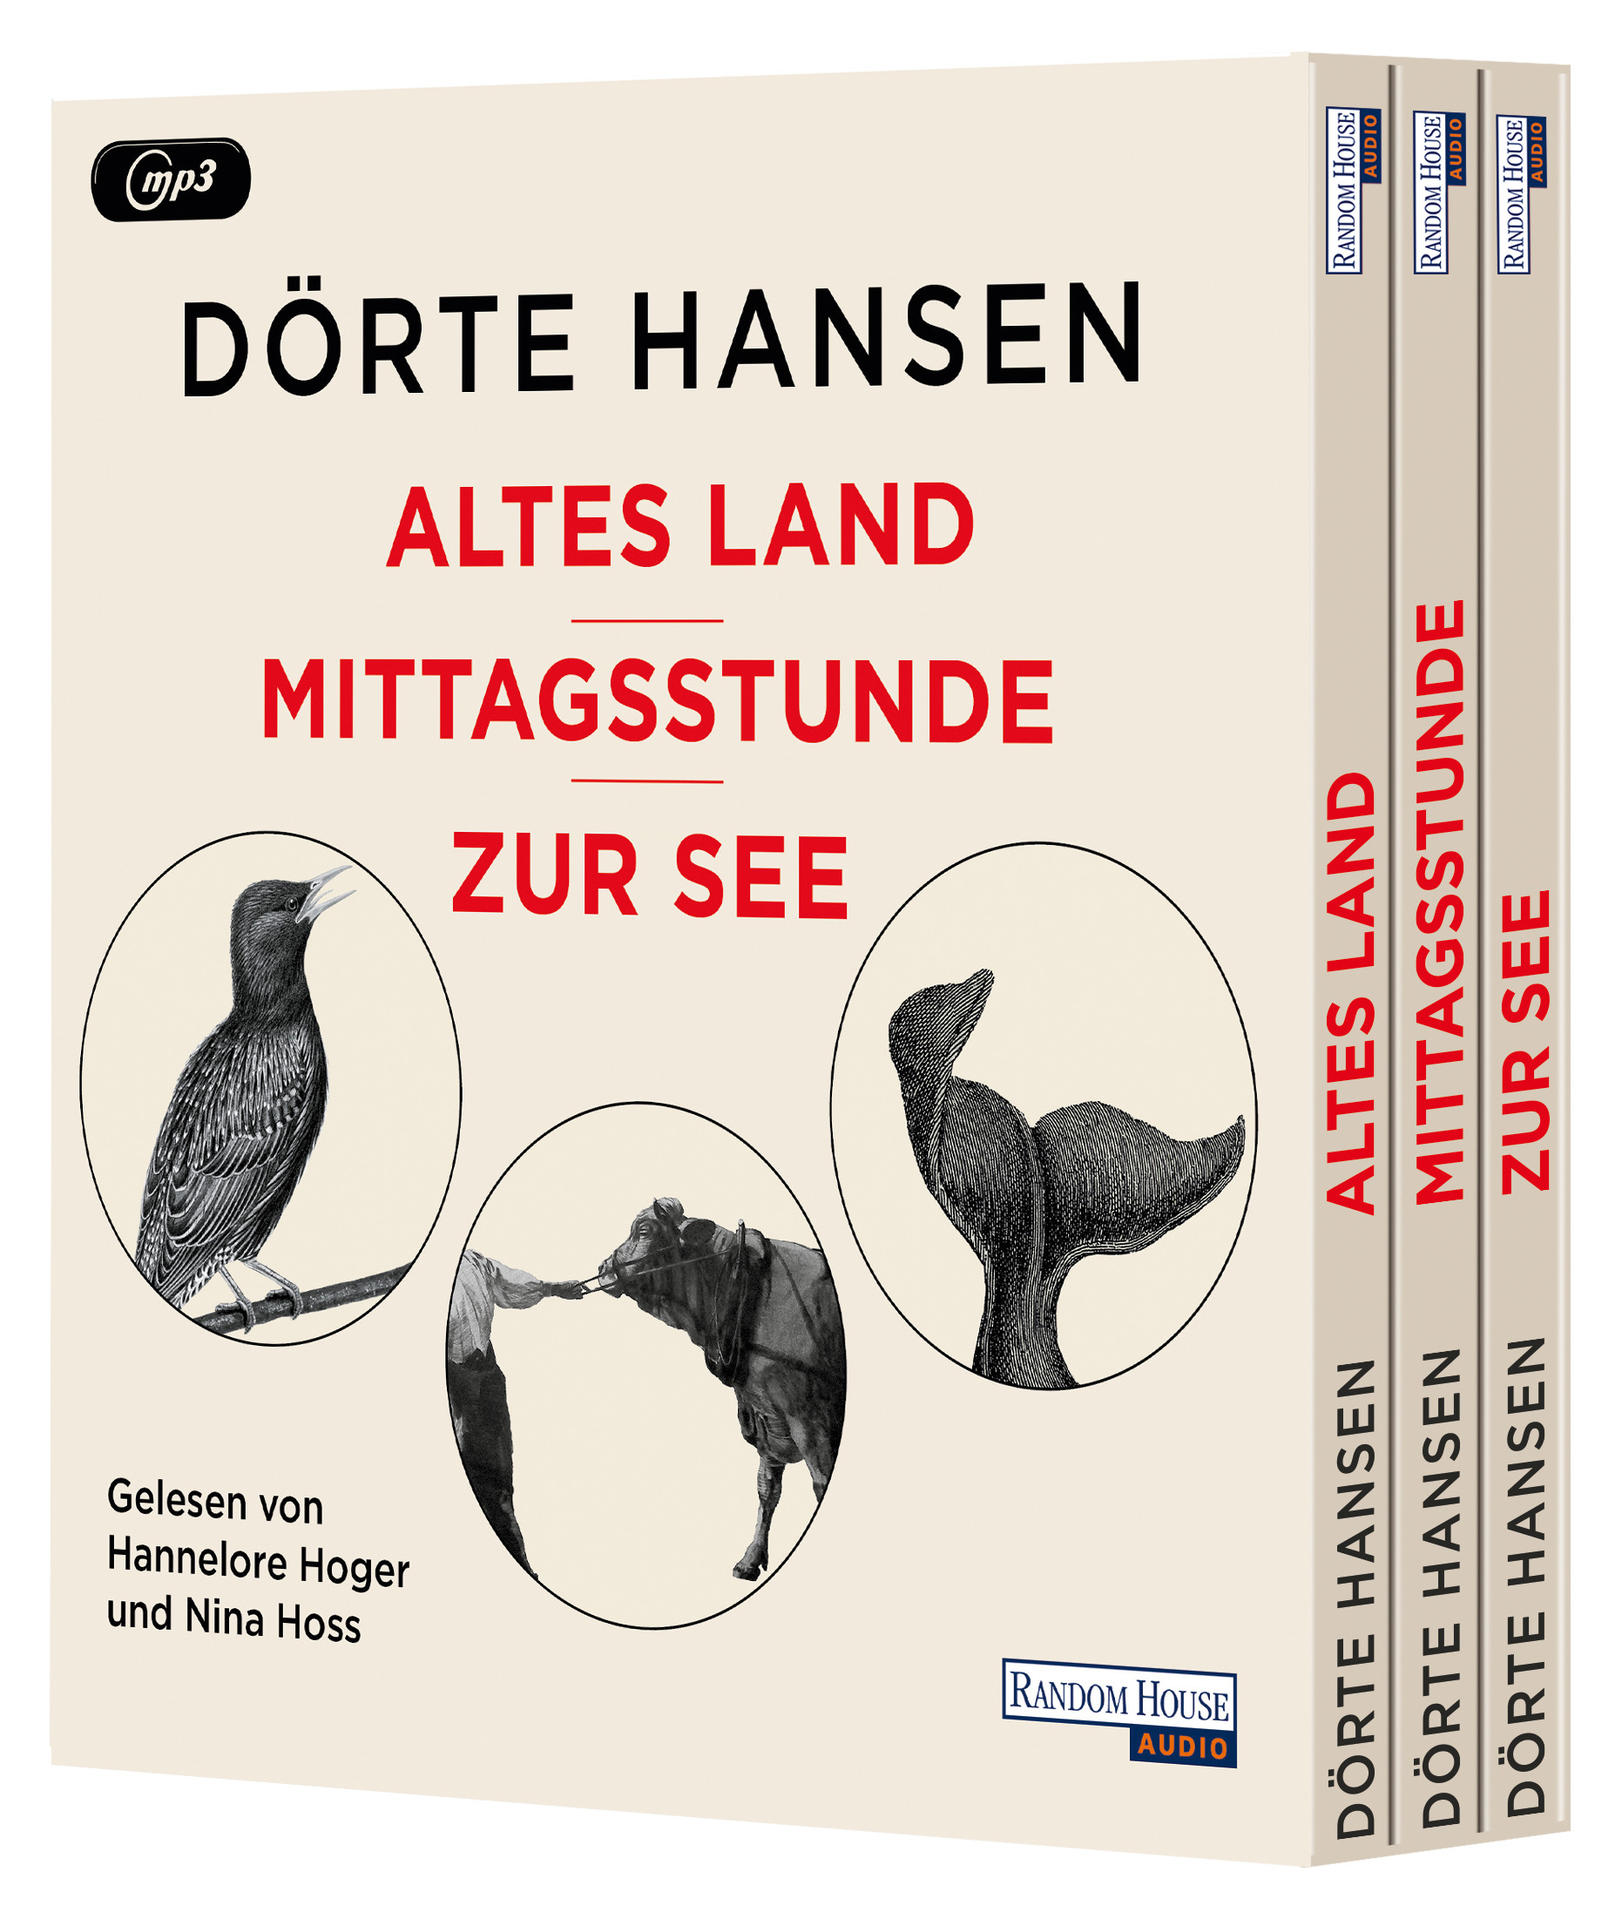 Dörte Dr.hansen - Land Altes (MP3-CD) Mittagsstunde - See Zur - 